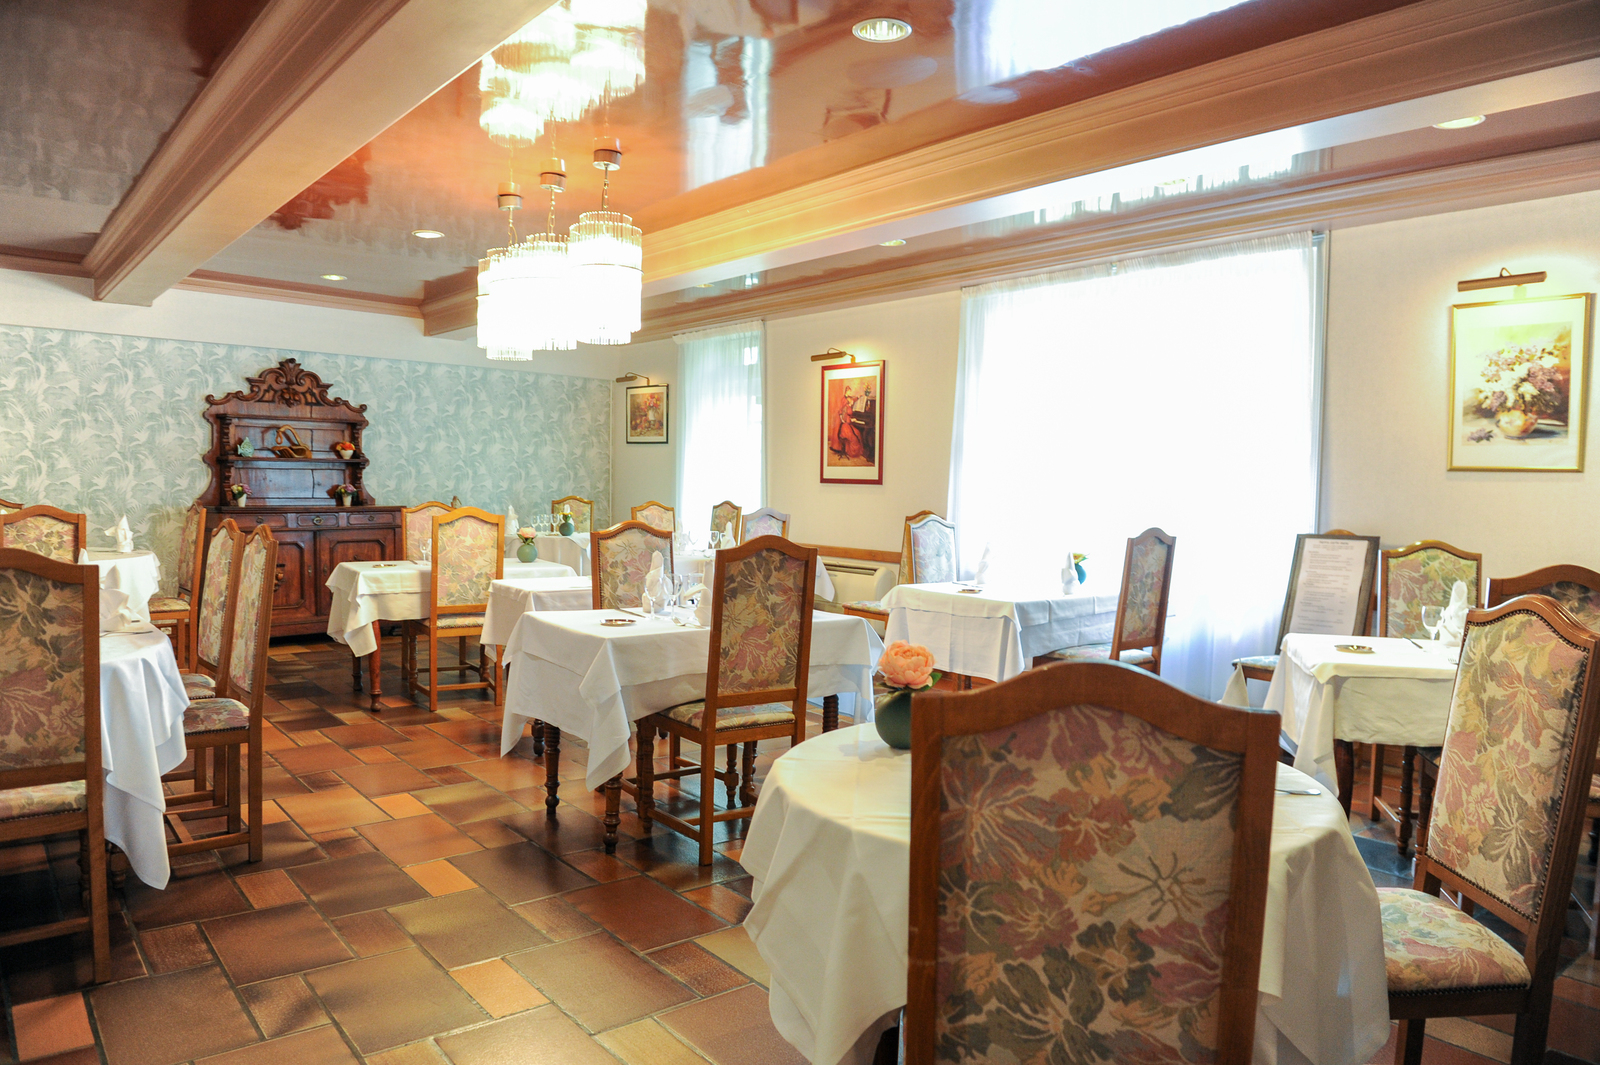 Salle restaurant Hotel du commerce Pont de-vaux